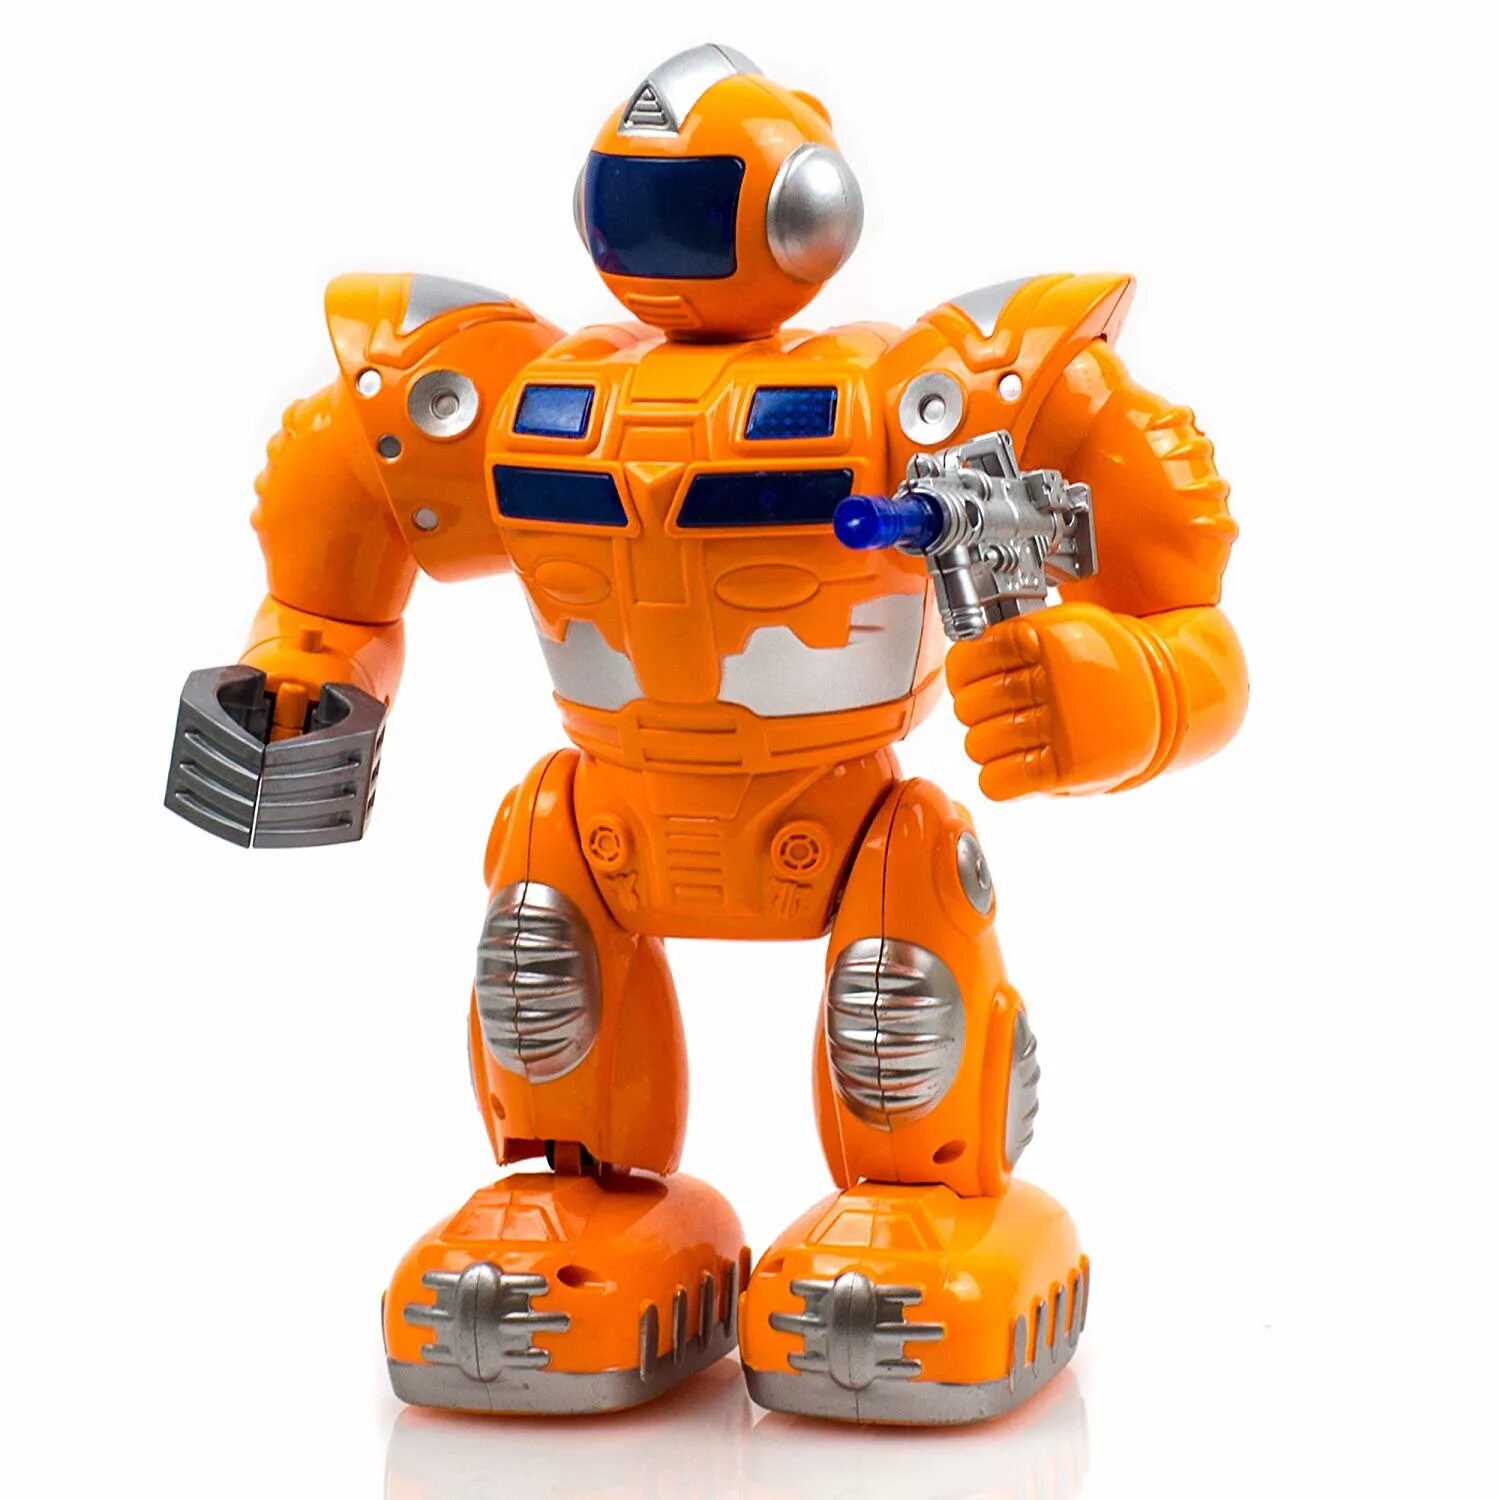 Игрушка робот. Тоботы игрушки. Робот игрушечный. Робот оранжевый игрушка. Включи игрушки роботы новые